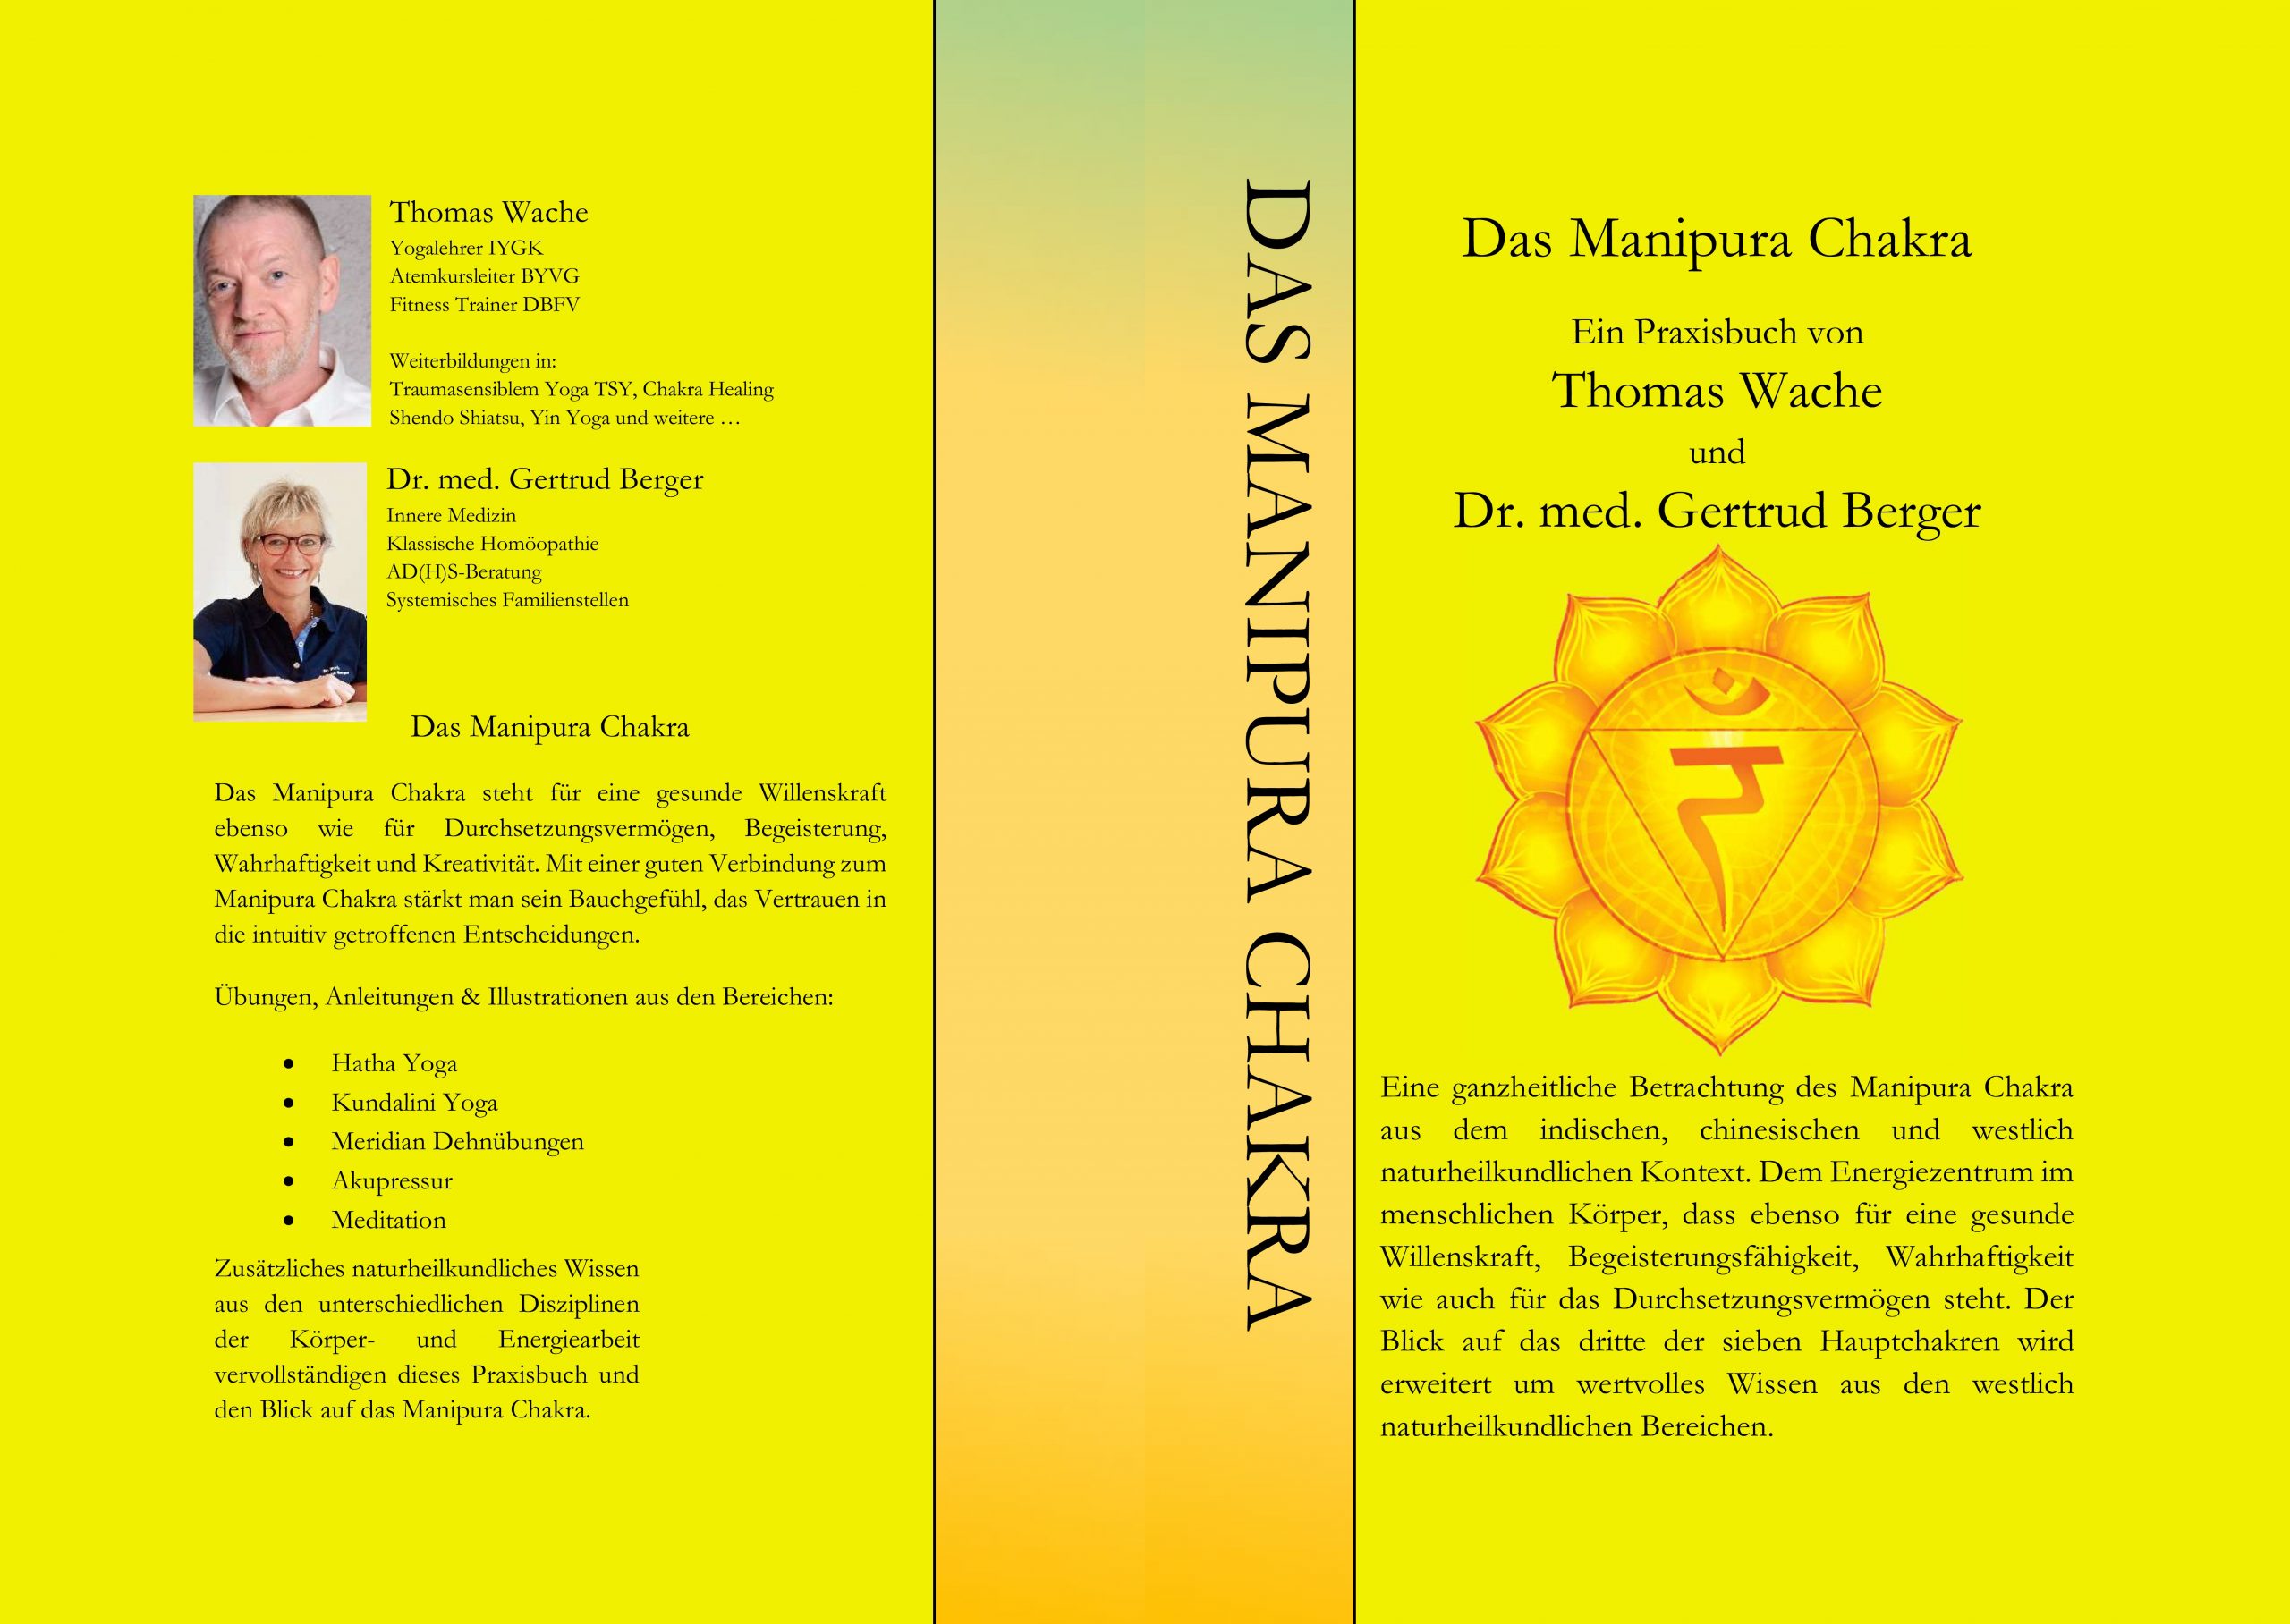 Das Manipura Chakra - Ein Praxisbuch von Thomas Wache und Dr. med. Gertrud Berger